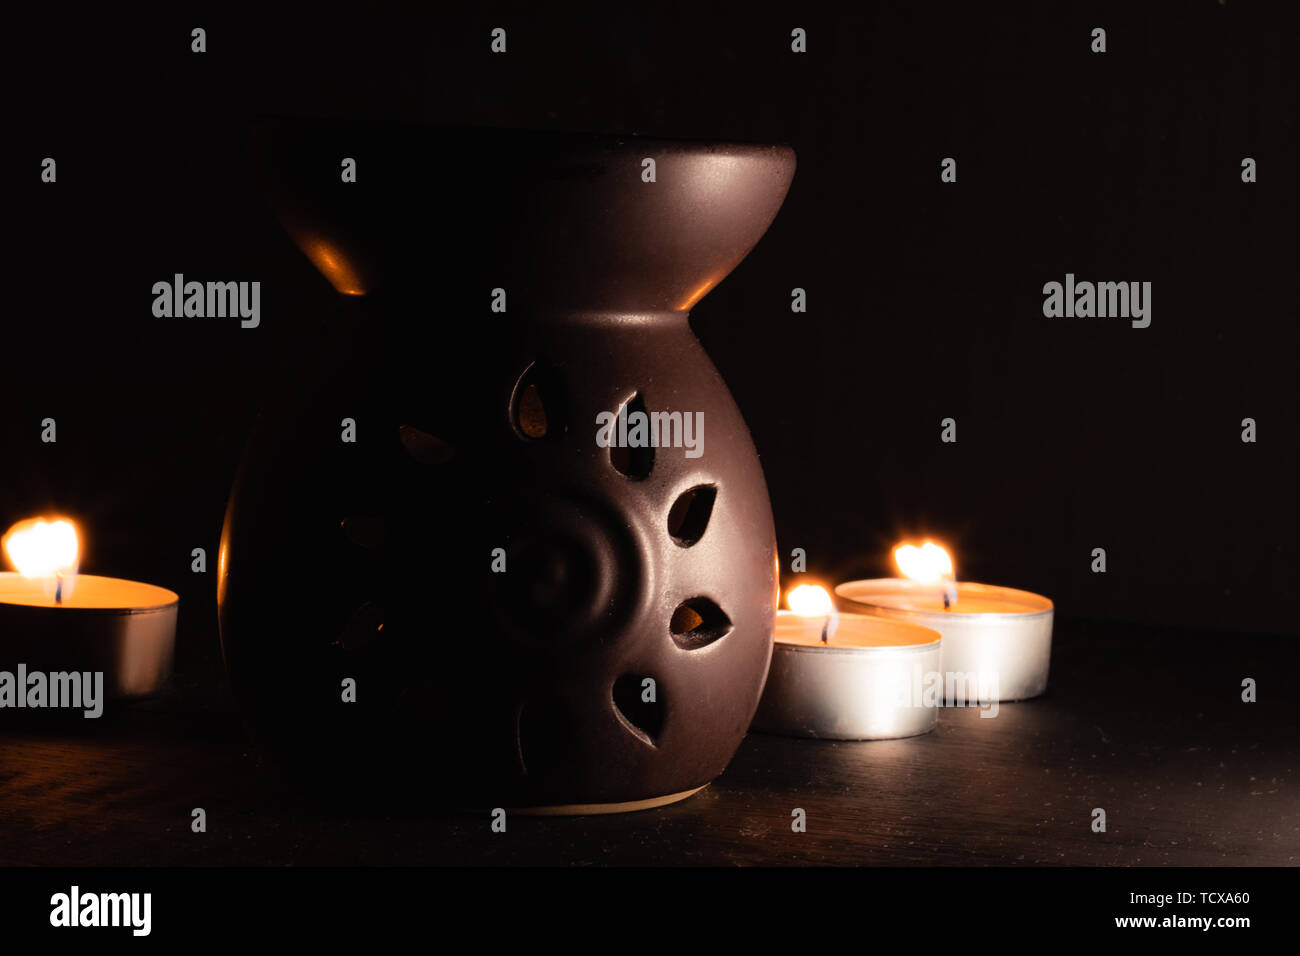 Traditionelle Aroma-diffusor mit Kerzen in der Rückseite, dunkles Bild mit hohem Kontrast Stockfoto